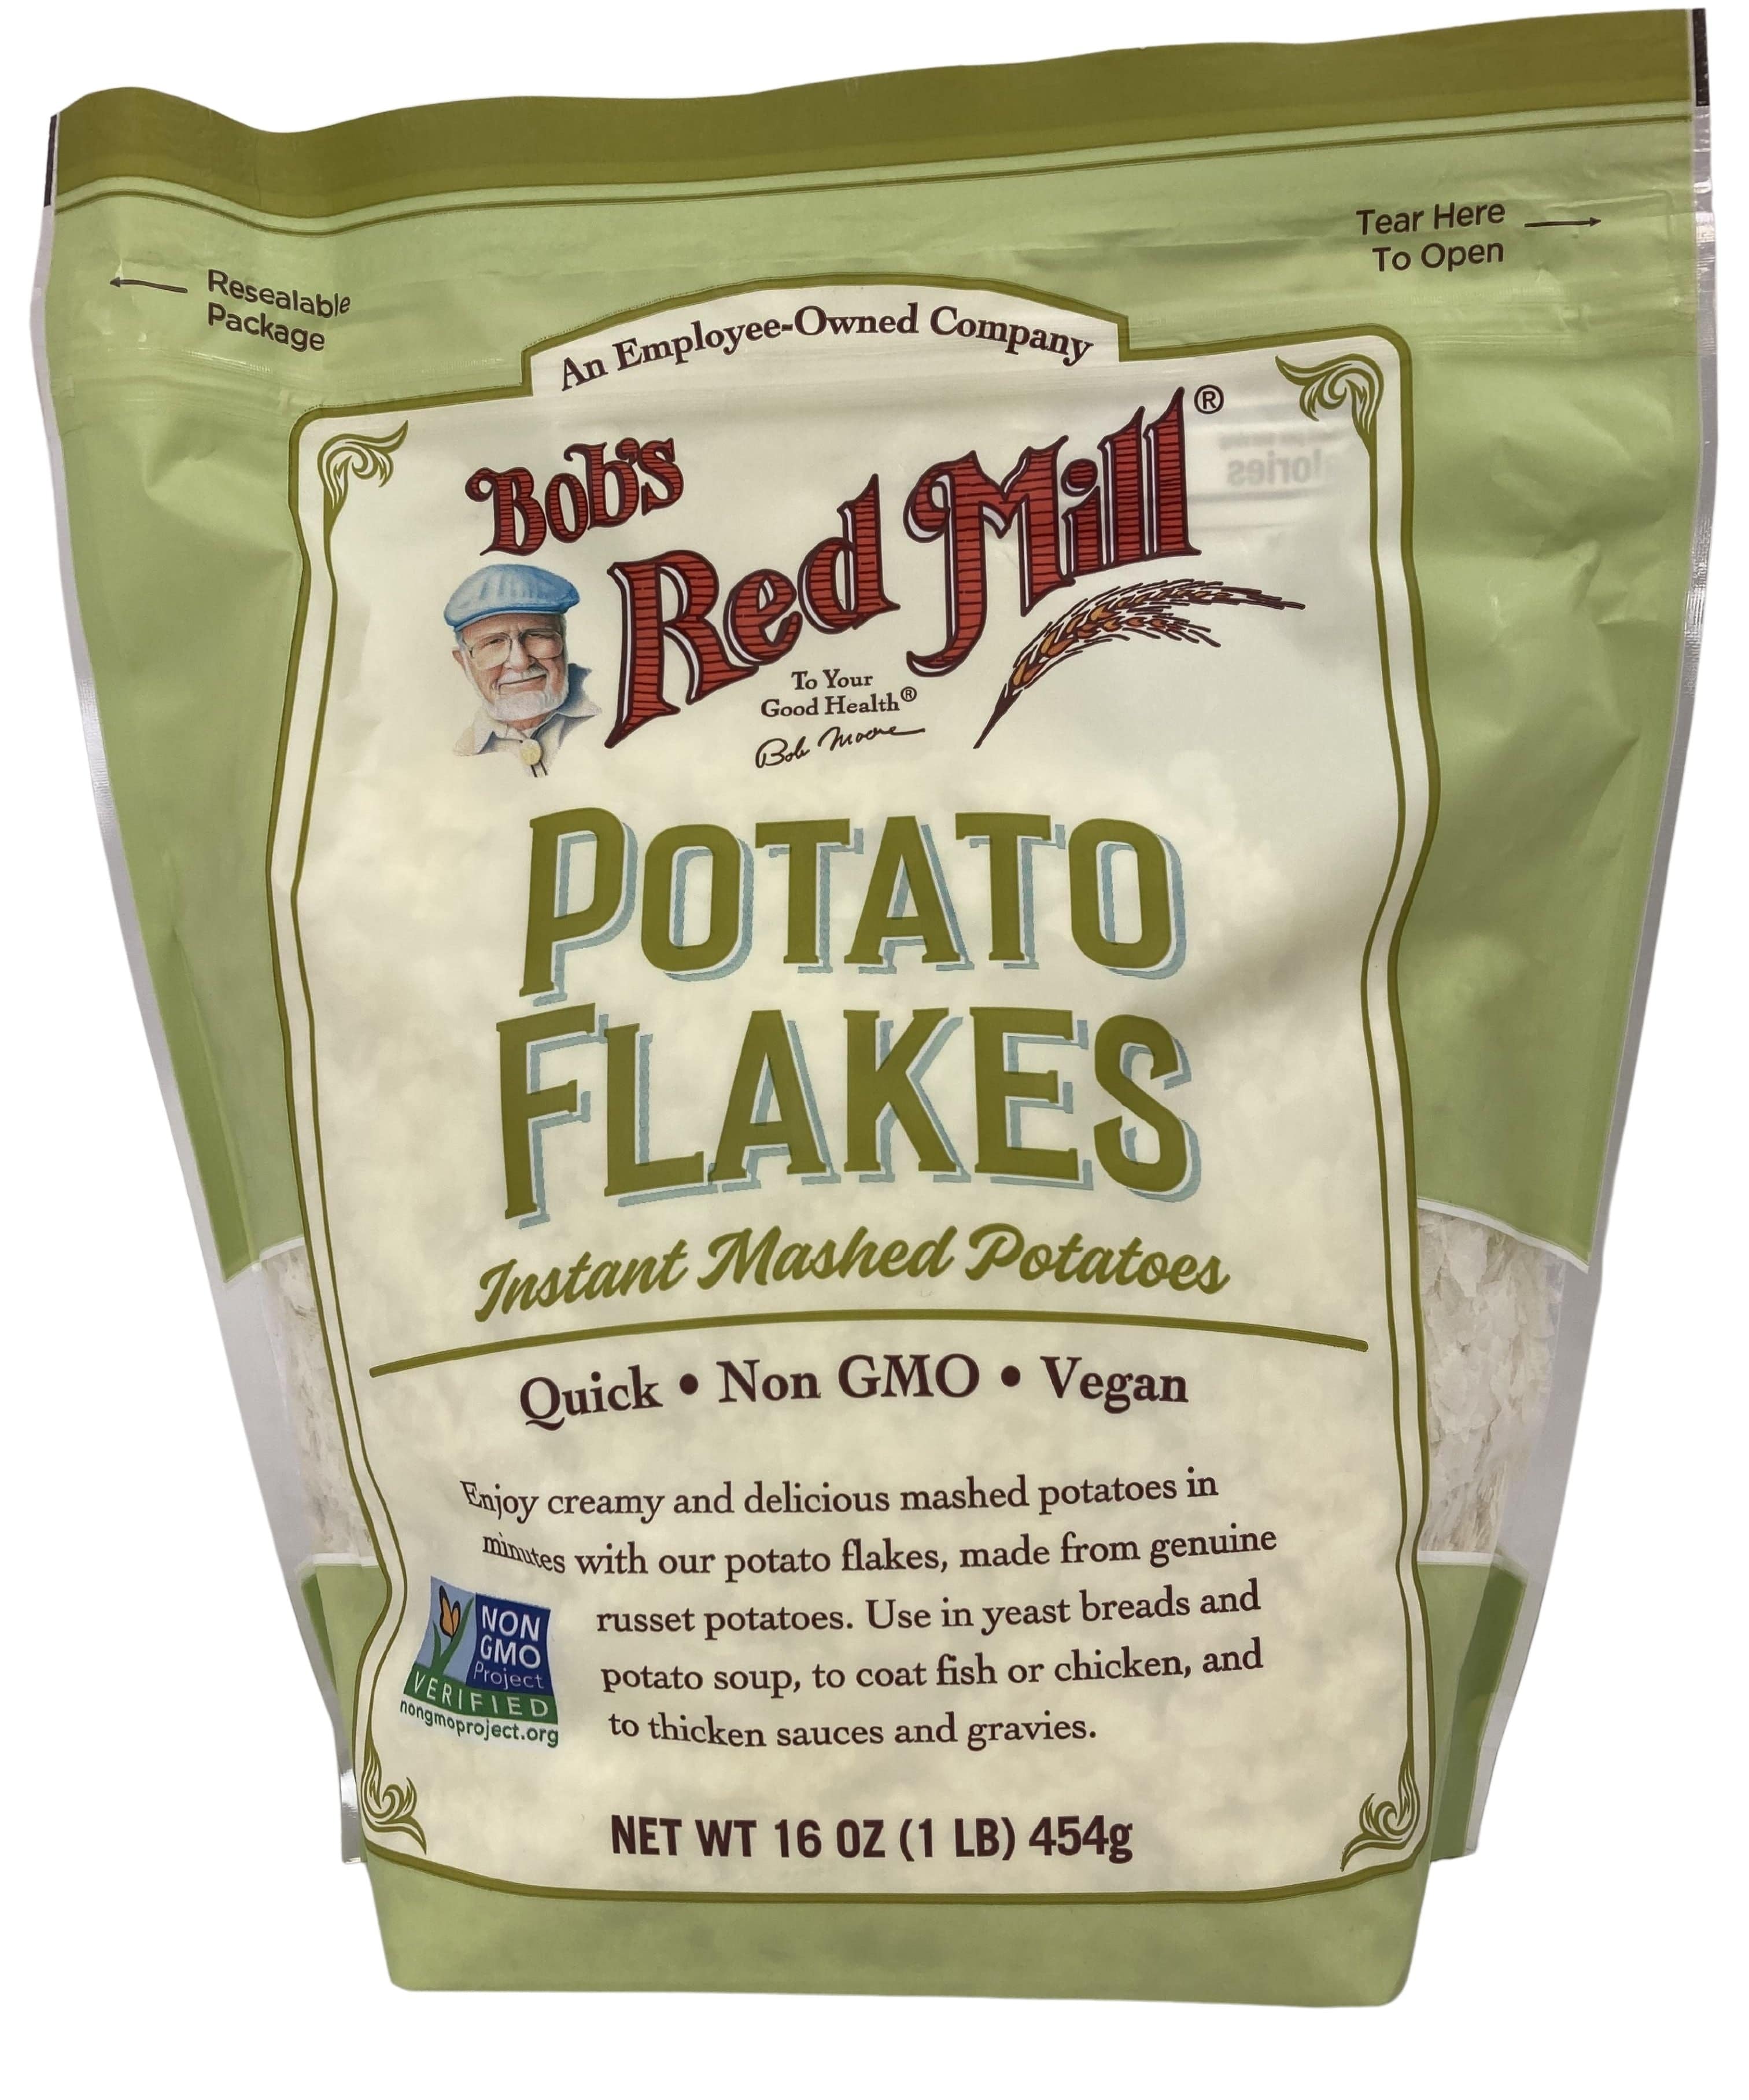 Instant Potato Flakes